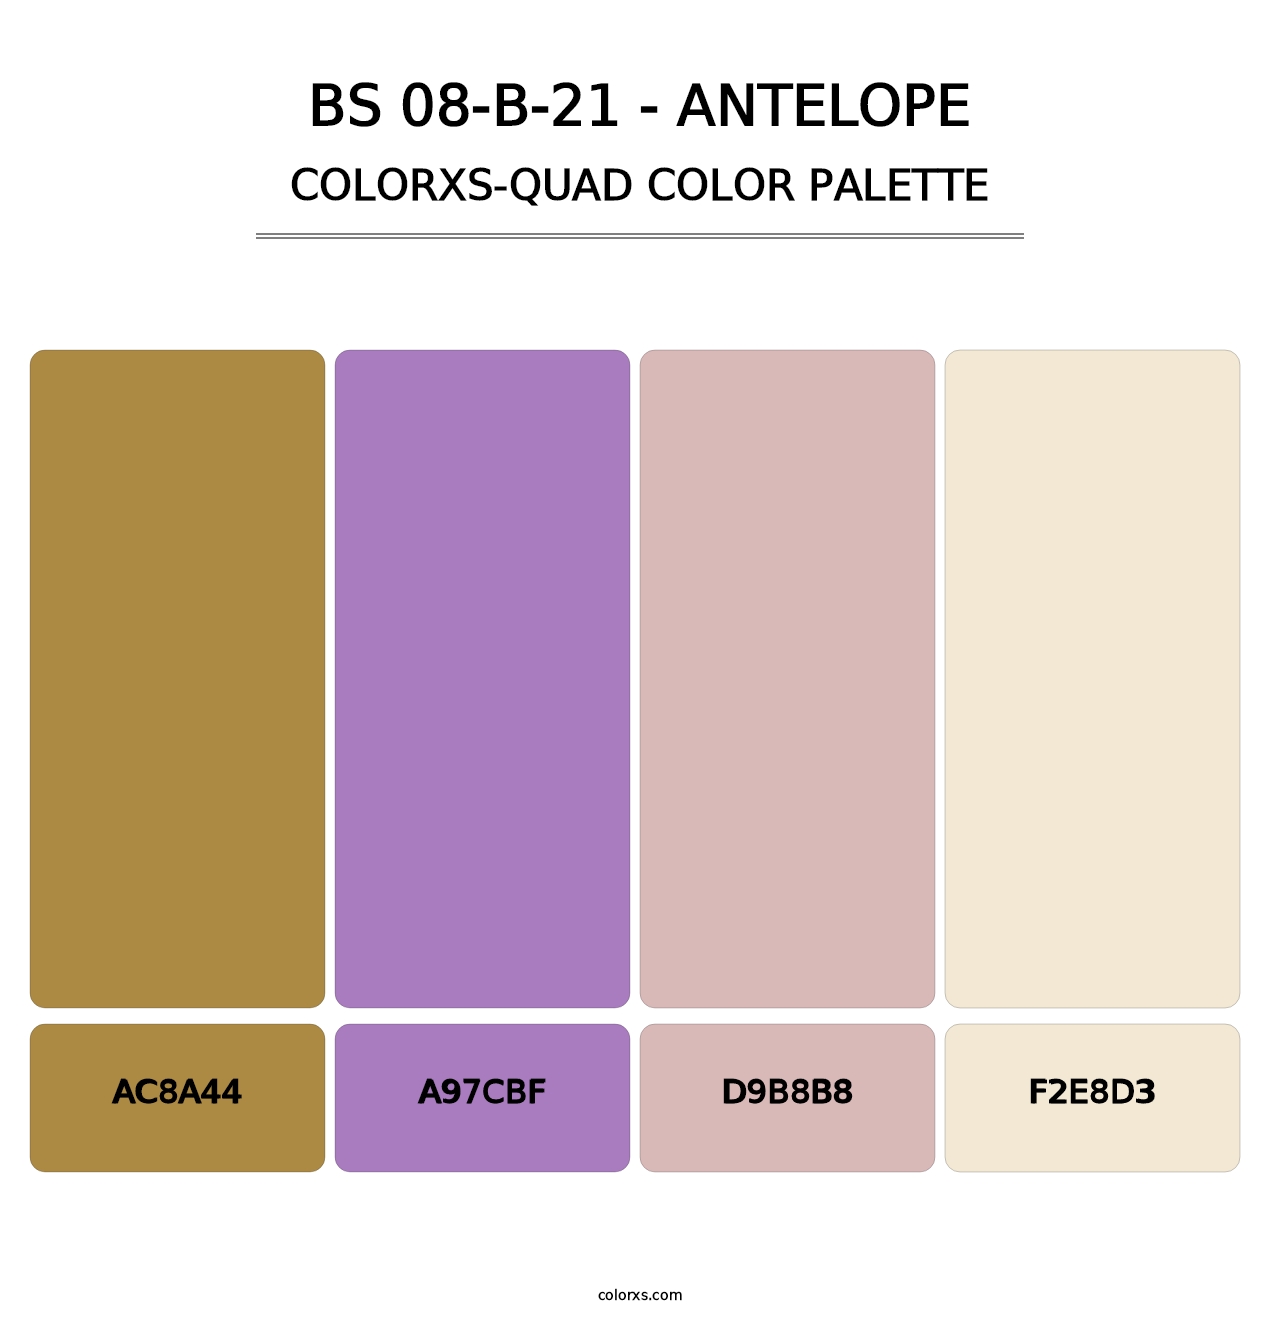 BS 08-B-21 - Antelope - Colorxs Quad Palette